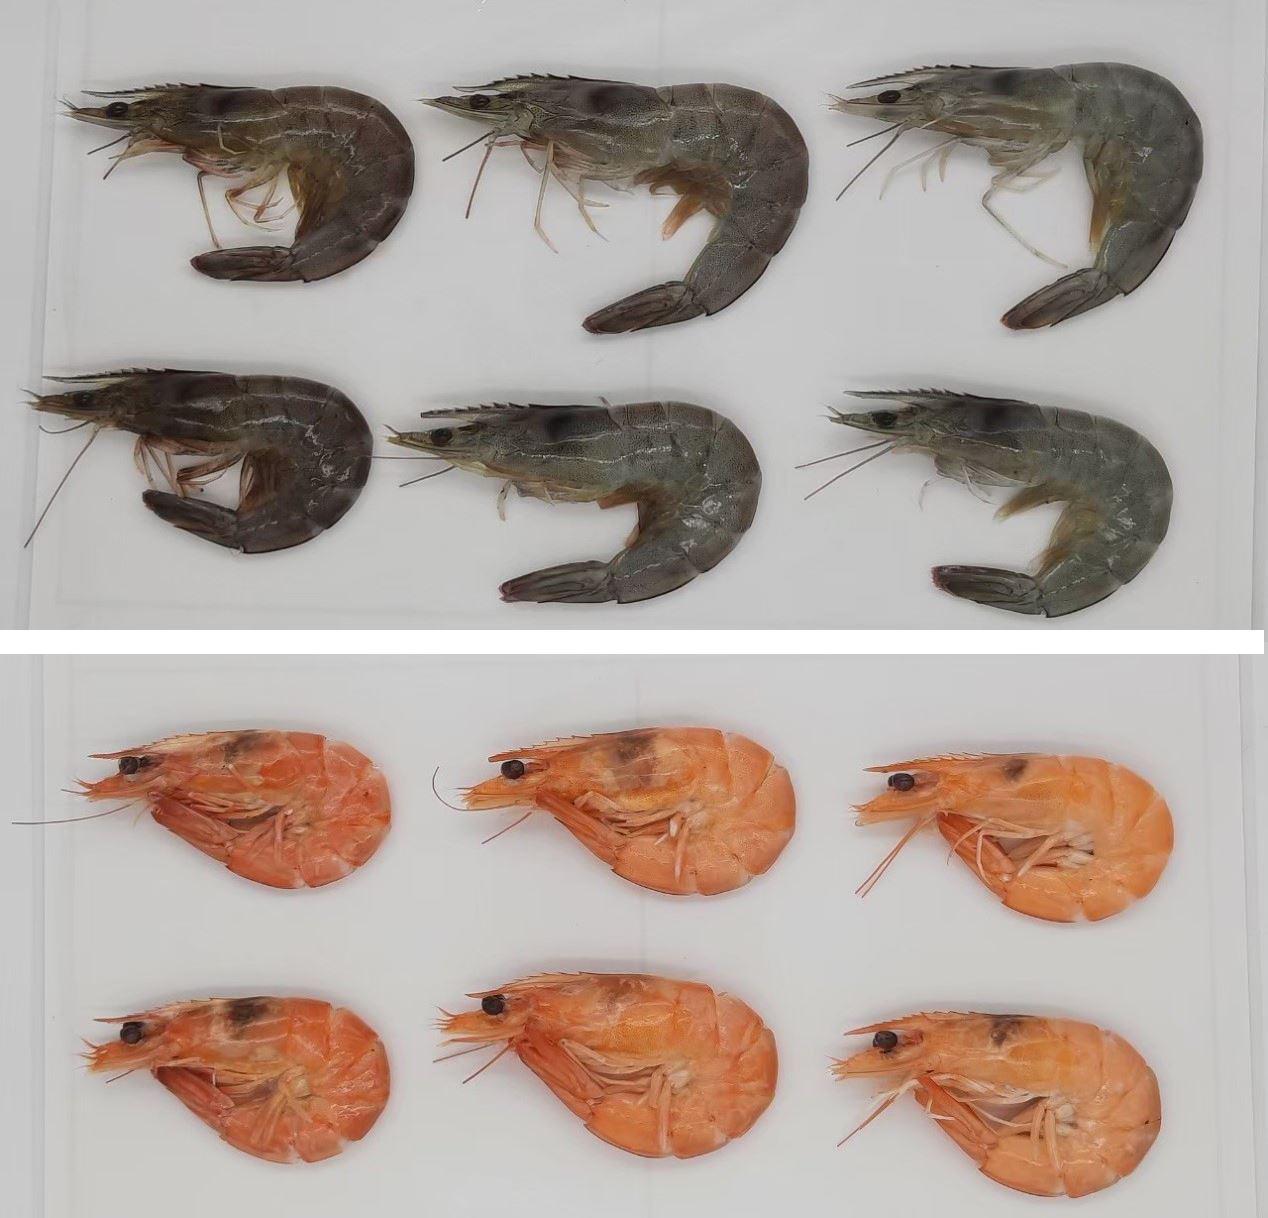 未遮蔽（左）、遮蔽（右）以及投餵本中心改良飼料（中）的養殖白蝦體色與烹煮後的呈色比較